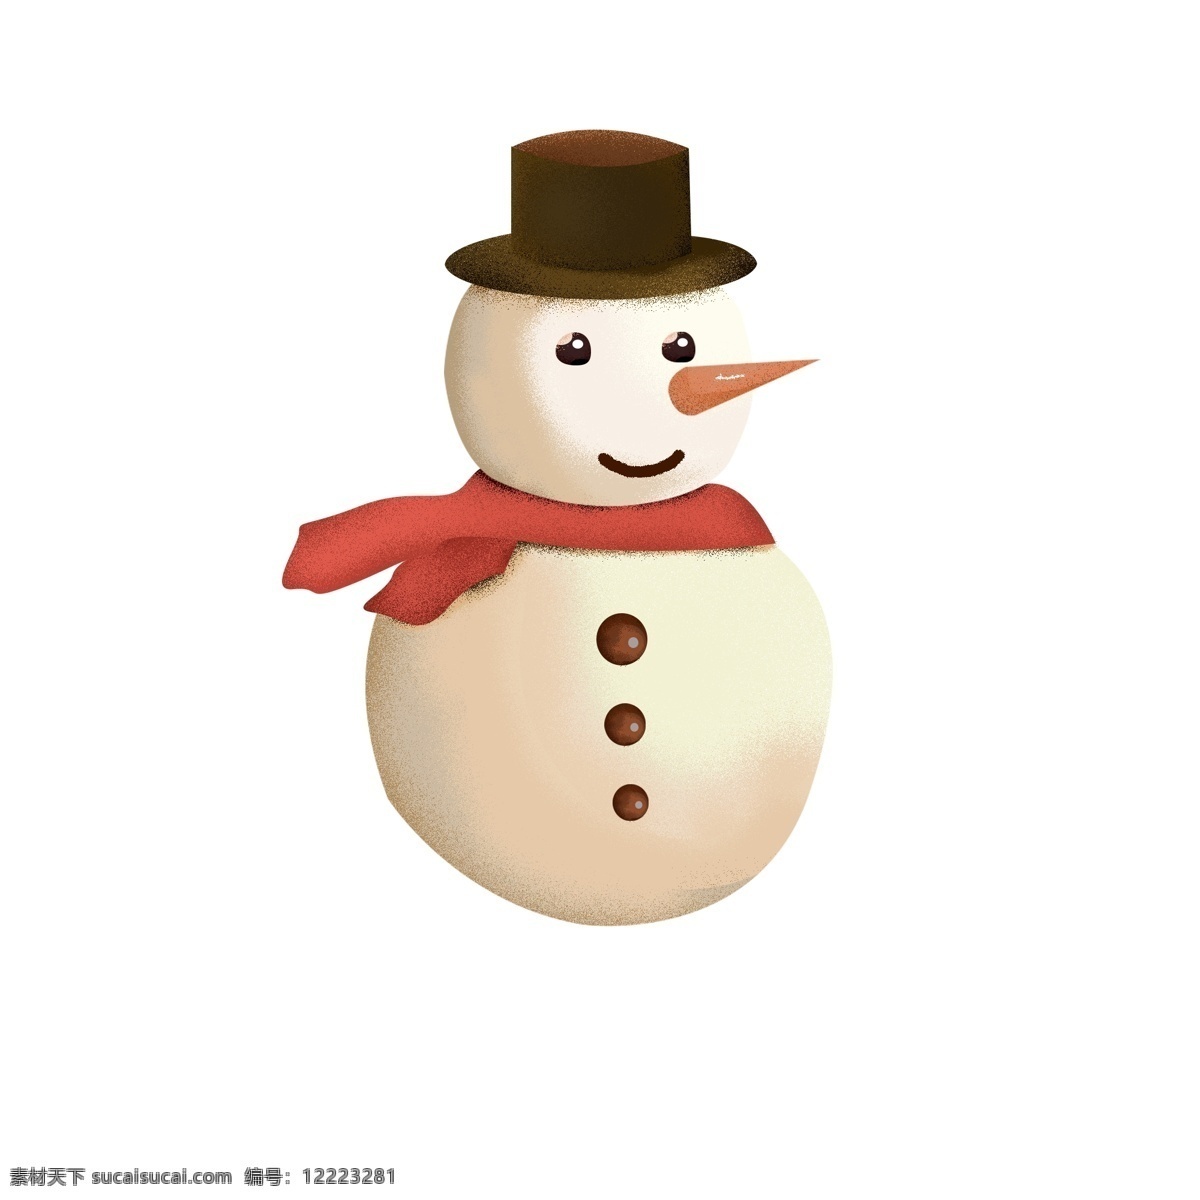 灰色 帽子 红 围巾 雪人 圣诞节雪人 可爱 噪点 绅士帽子 堆雪人